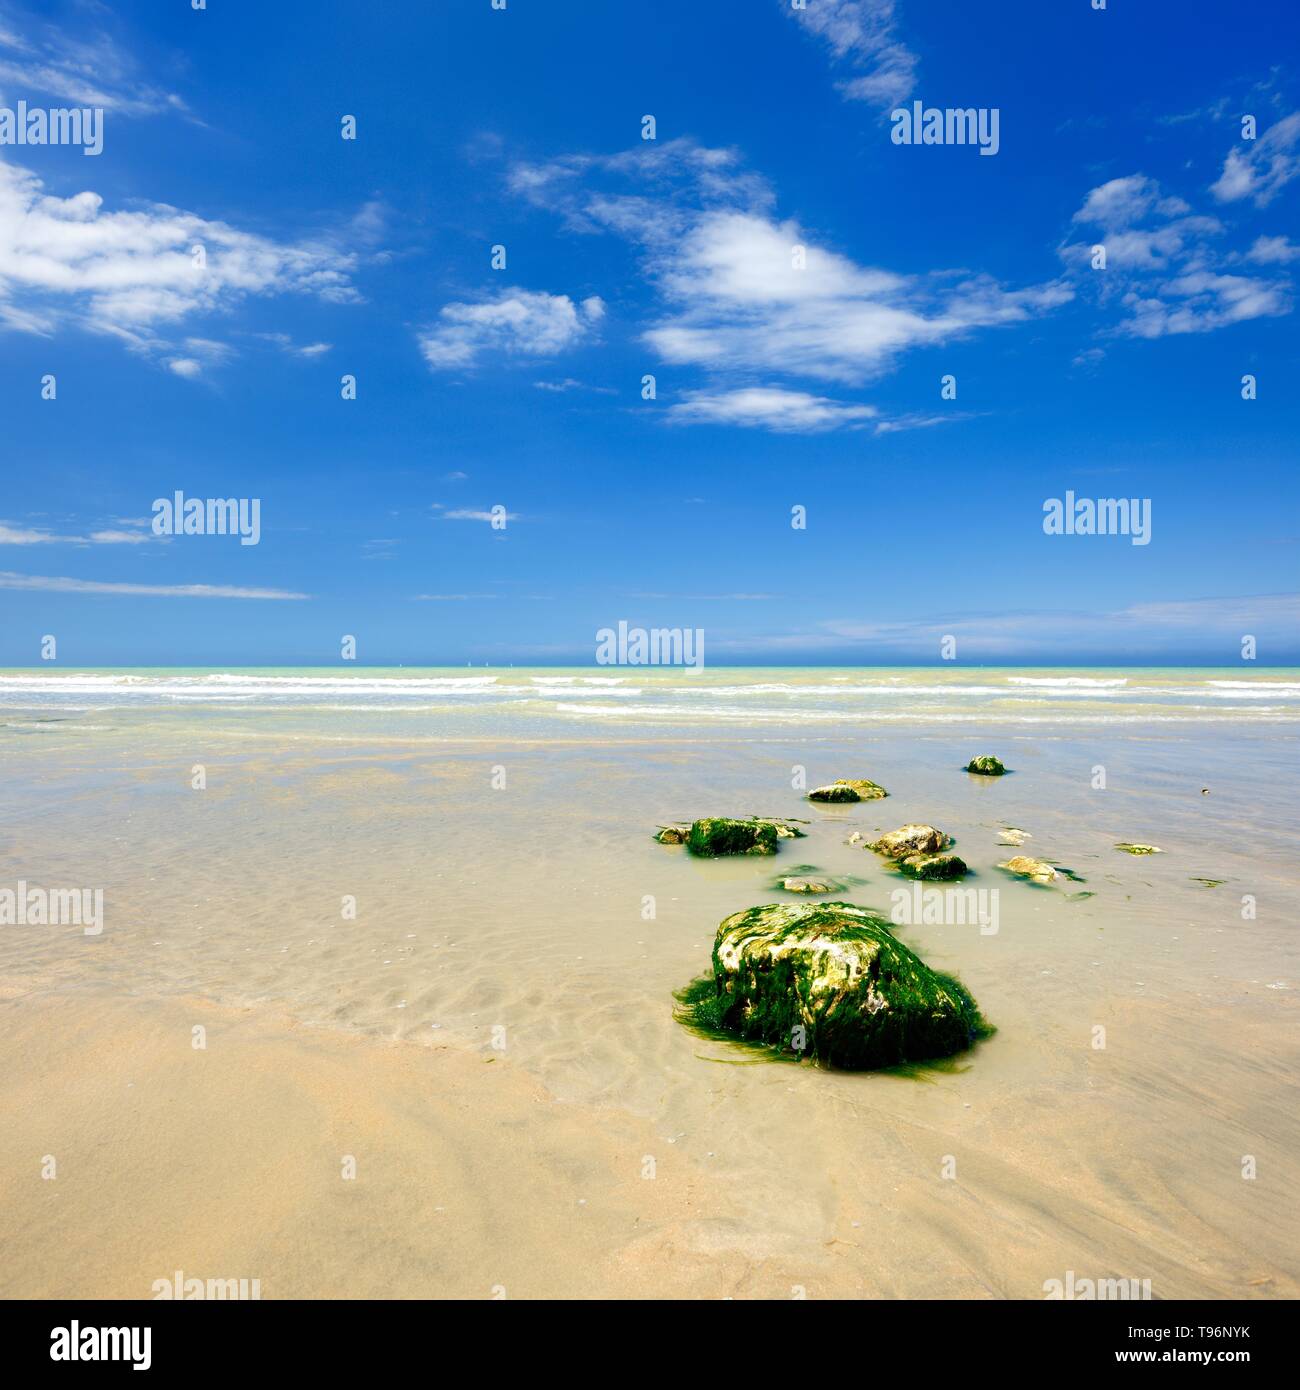 Stones overgrown with algae on the shallow sandy beach, blue sky, Saint-Valery-en-Caux, Normandy, France Stock Photo